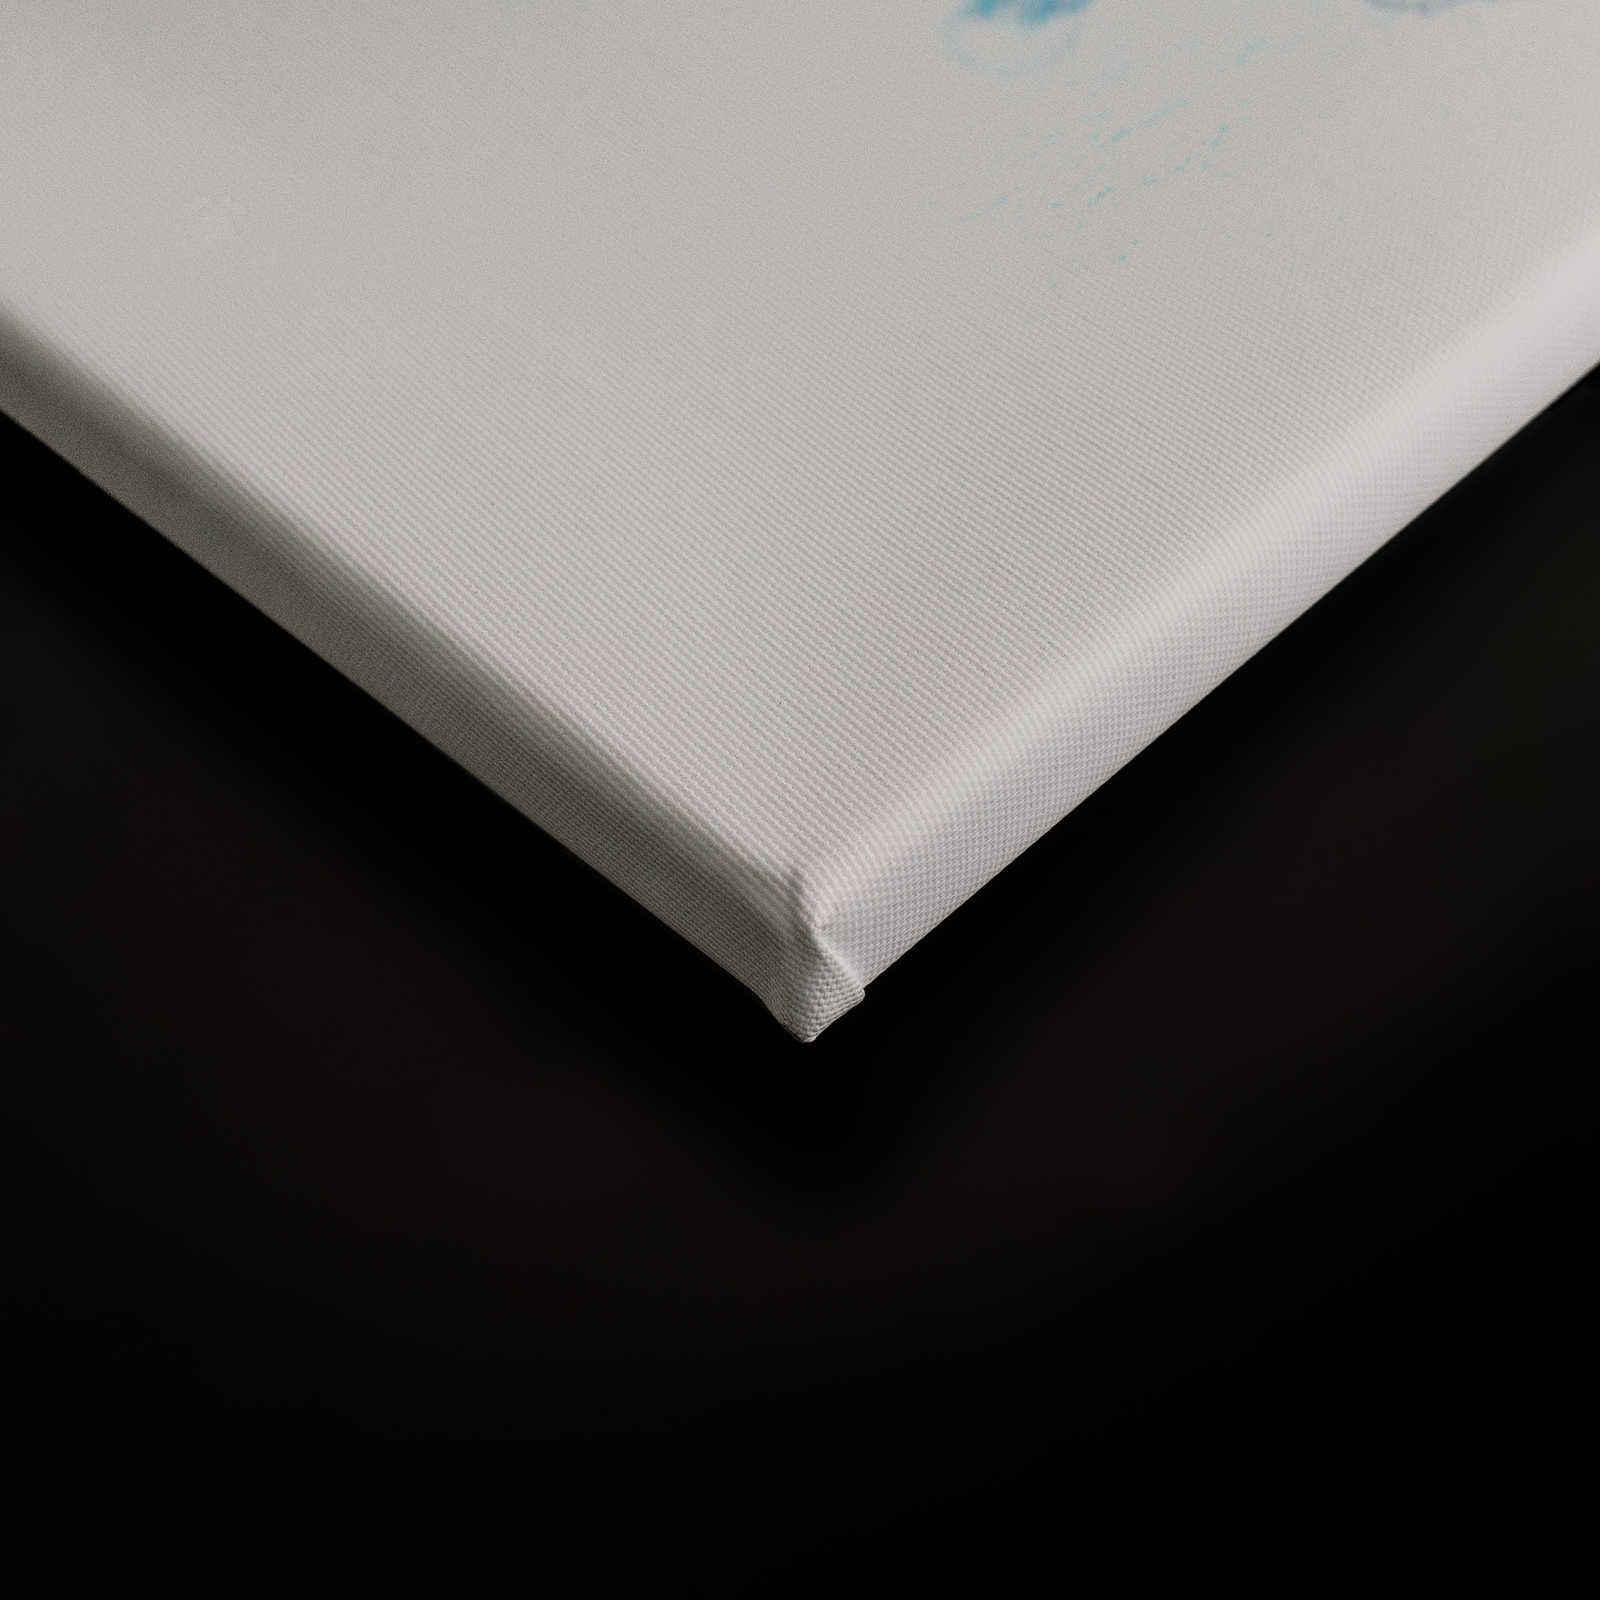             Aquarel Canvas Schilderij Inktvlek, Gradiënt Grijsblauw - 0.90 m x 0.60 m
        